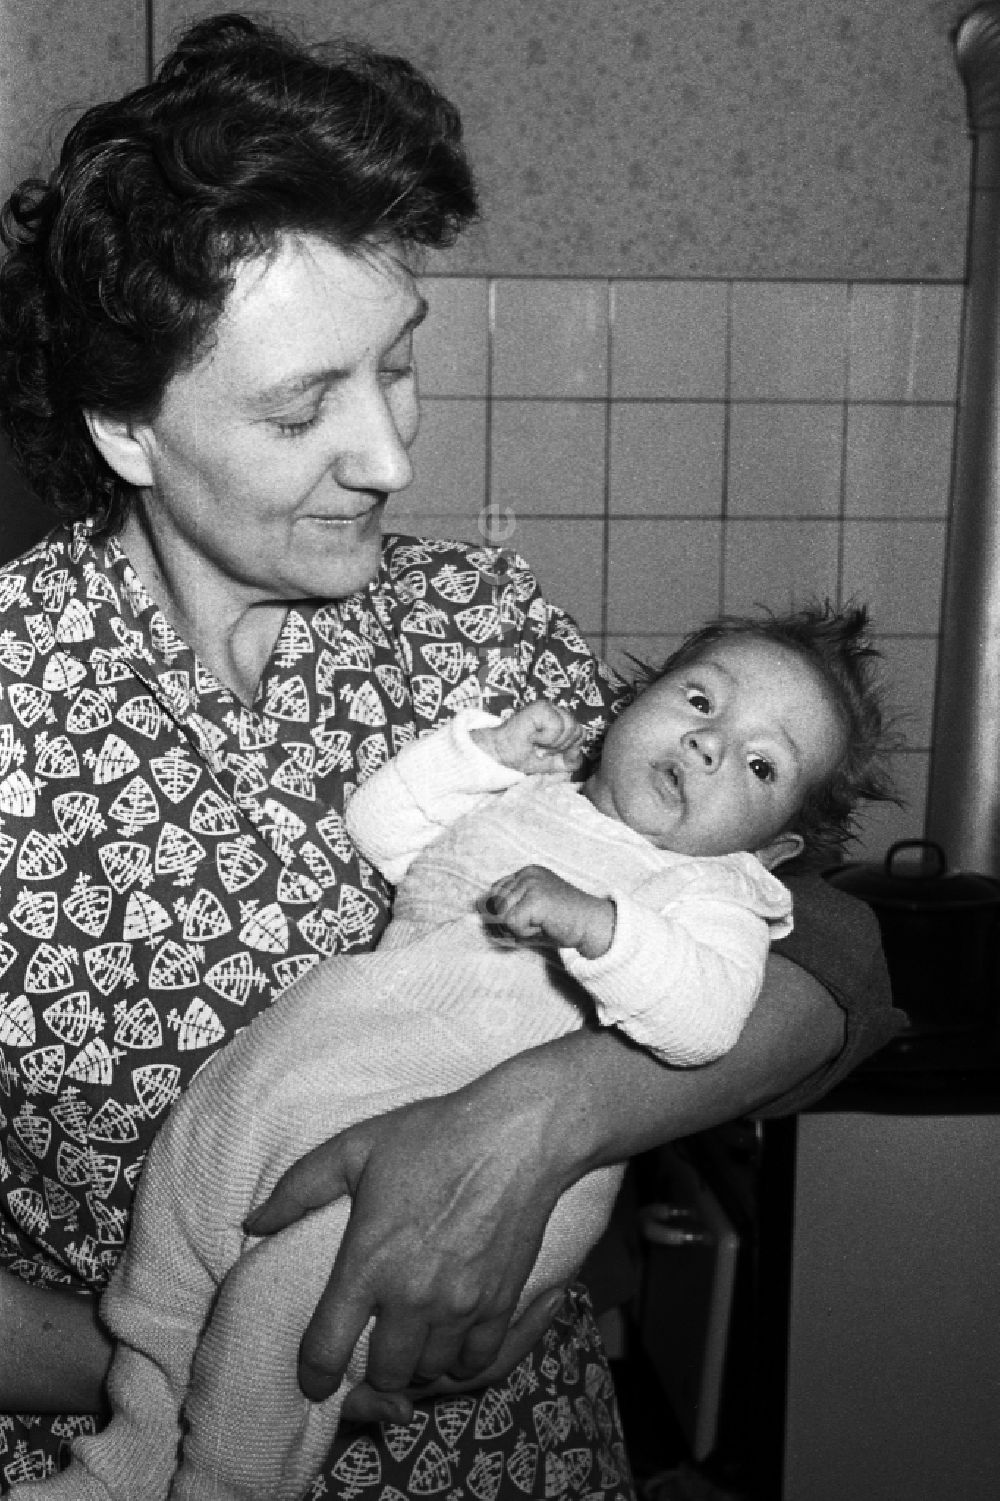 Merseburg: Frau mit Baby auf dem Arm in Merseburg im Bundesland Sachsen-Anhalt auf dem Gebiet der ehemaligen DDR, Deutsche Demokratische Republik